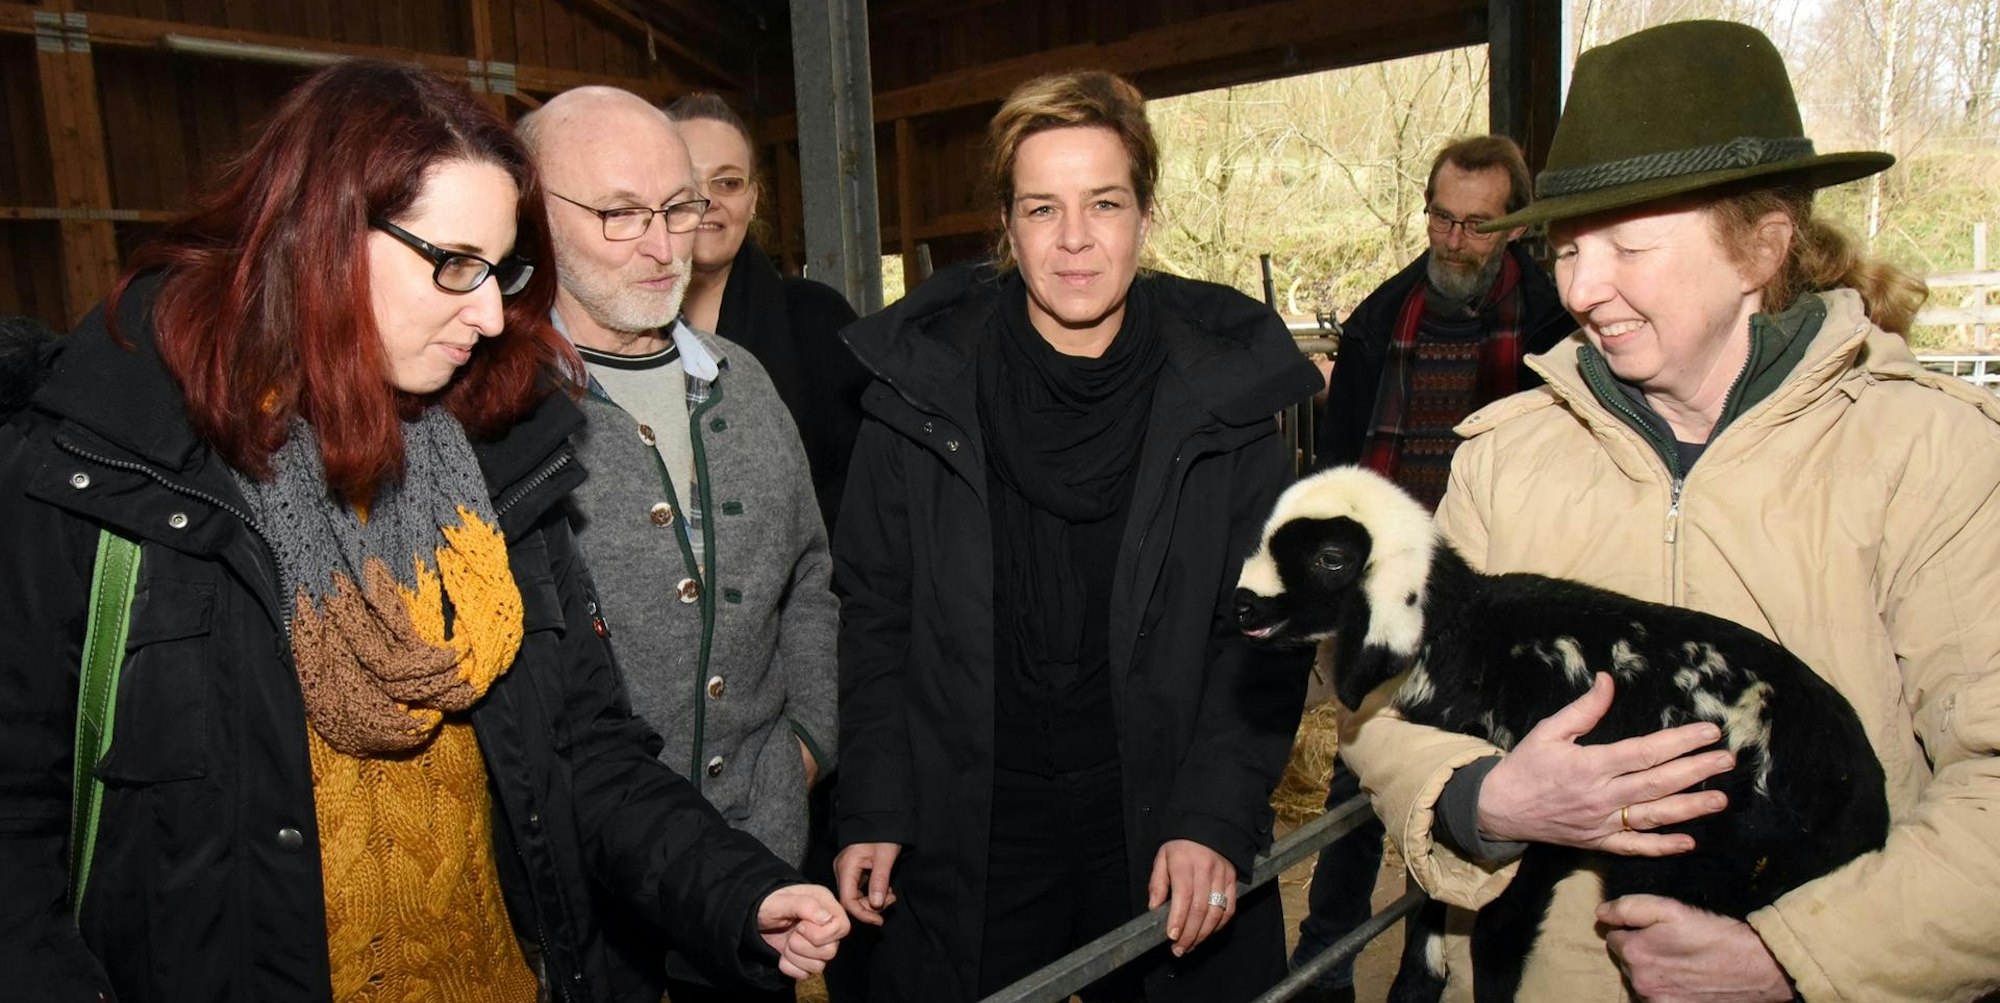 Beim Betriebsbesuch brachten Klosterbauer Peter Schmidt (2.v.l.) und Susanne Schulte (r.) der Grünen-Spitzenkandidatin Mona Neubaur (M.) und Sabine Grützmacher (l.) die Landwirtschaft näher.